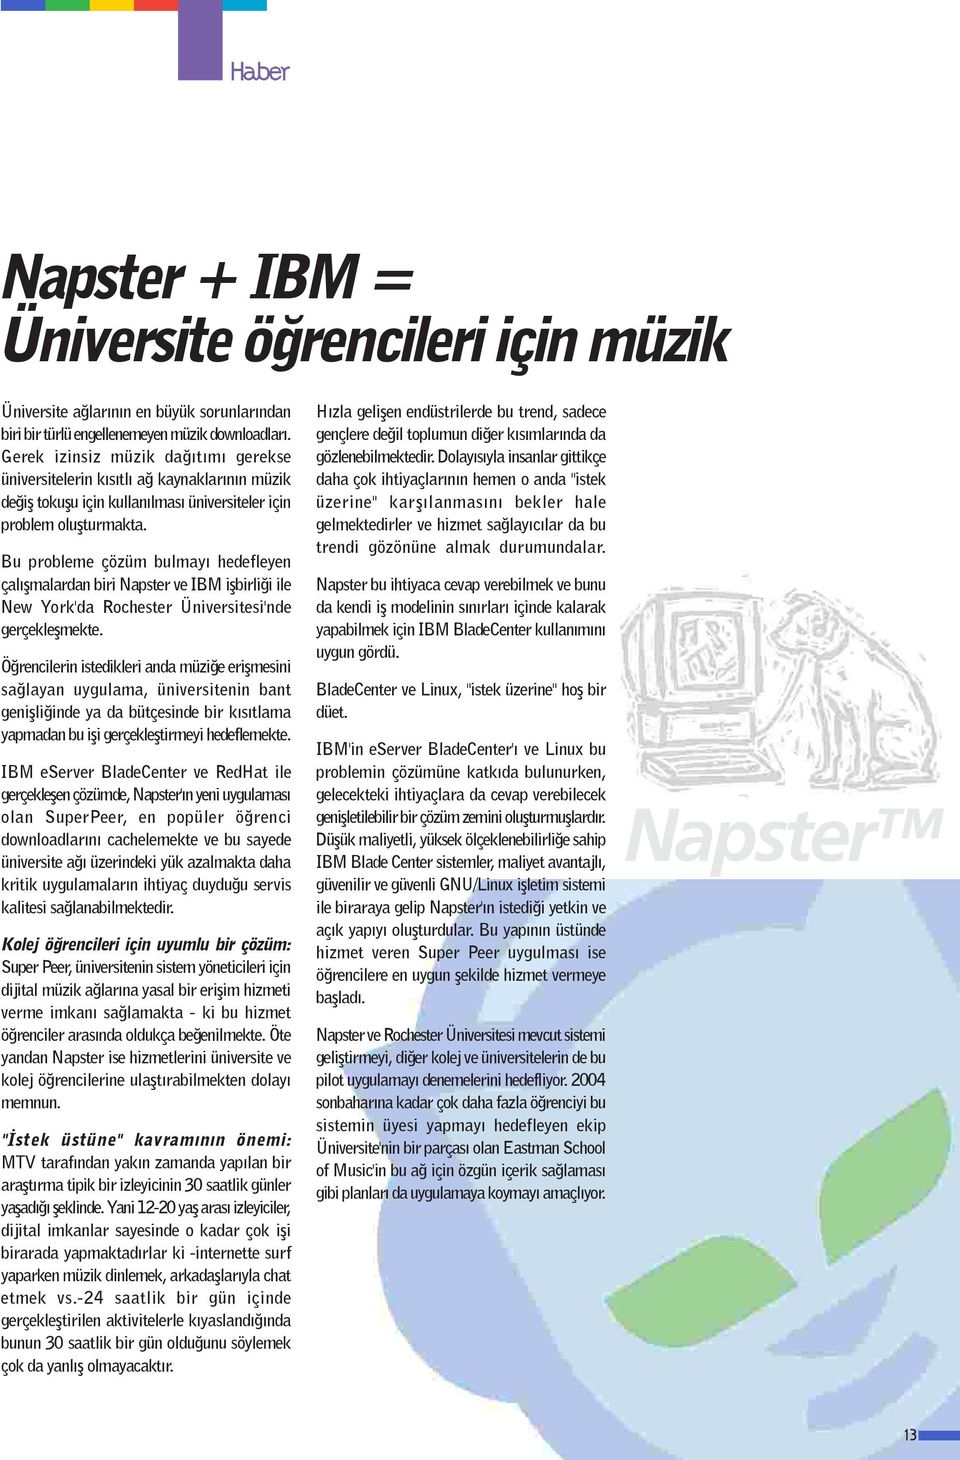 Bu probleme çözüm bulmayı hedefleyen çalıflmalardan biri Napster ve IBM iflbirli i ile New York'da Rochester Üniversitesi'nde gerçekleflmekte.